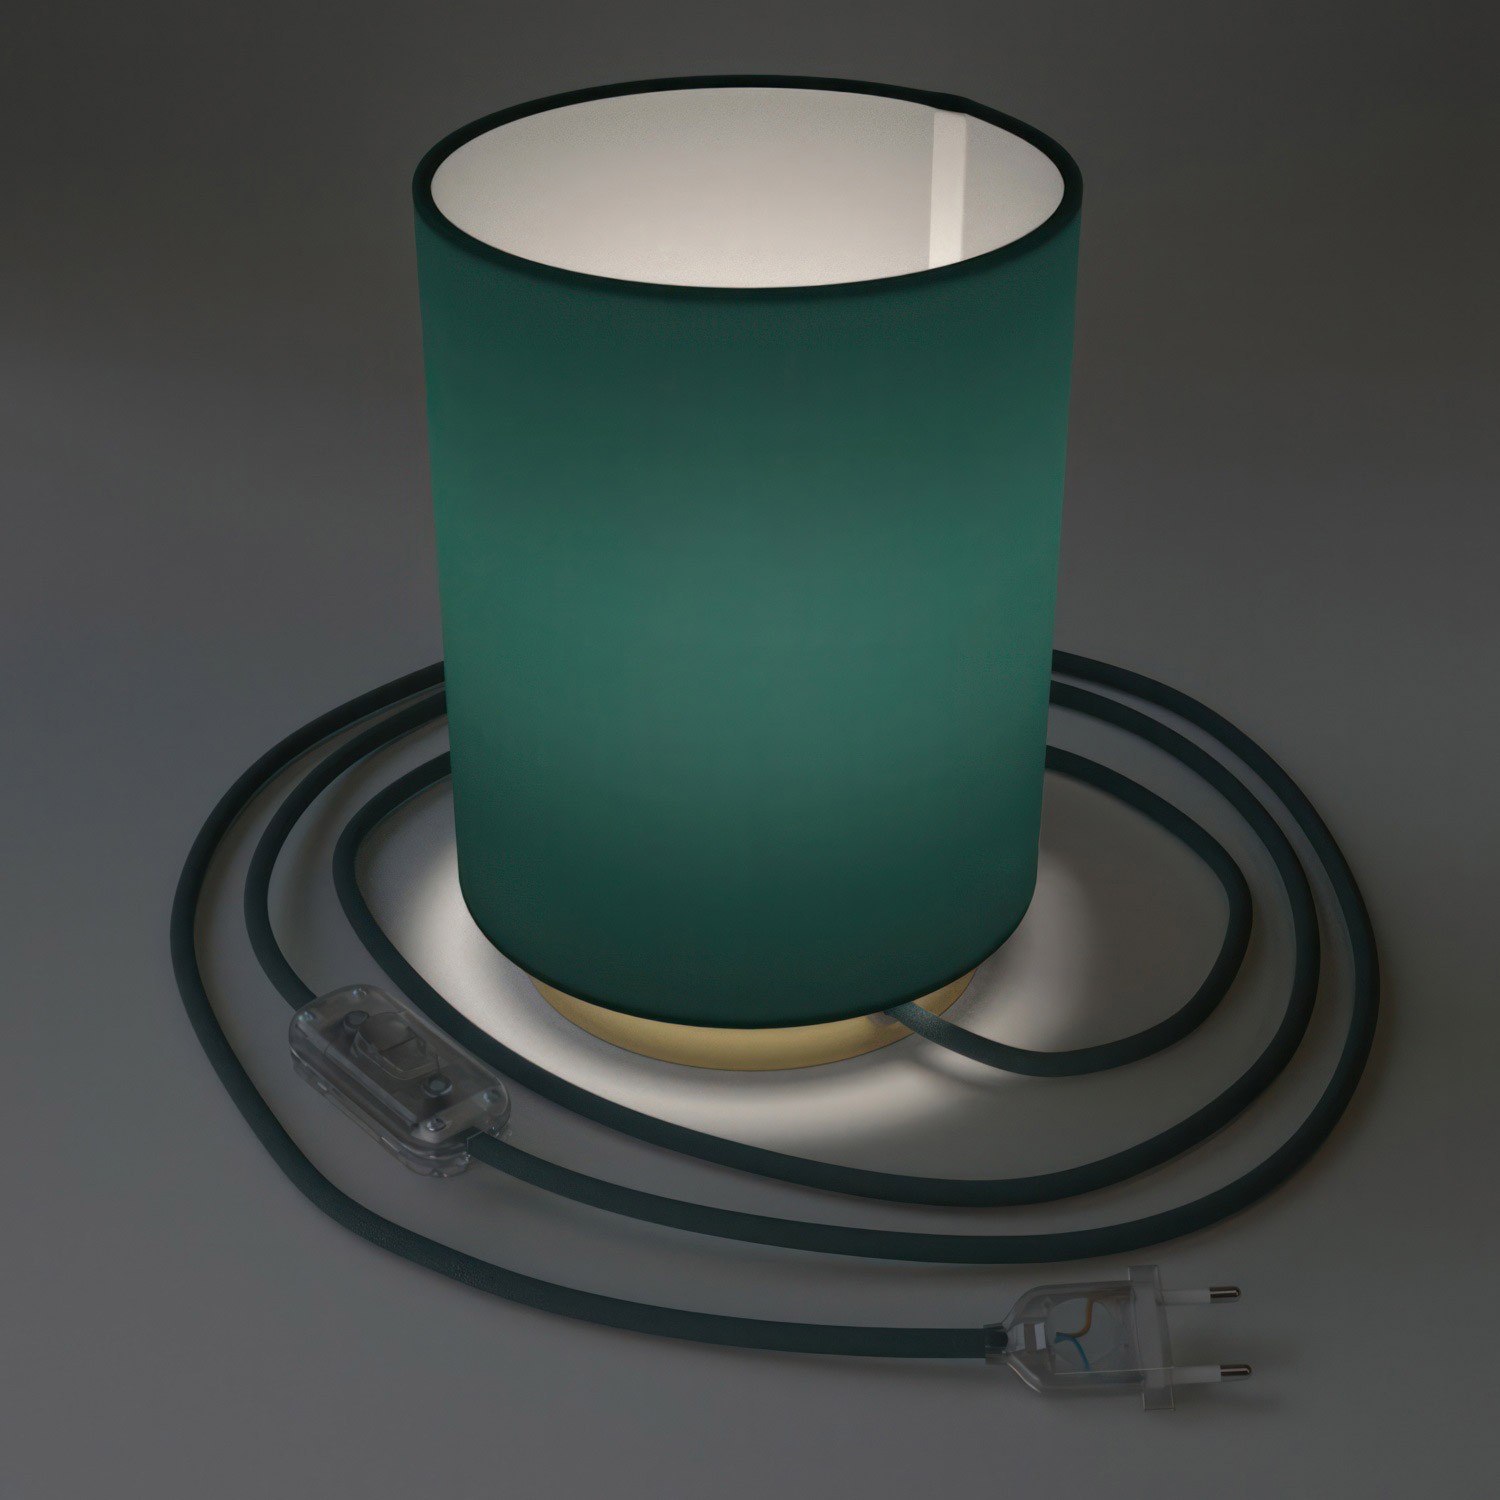 Posaluce Metal met Cilindro lampenkap van petrol cinette, inclusief lichtbron, textielkabel, schakelaar en 2-polige stekker